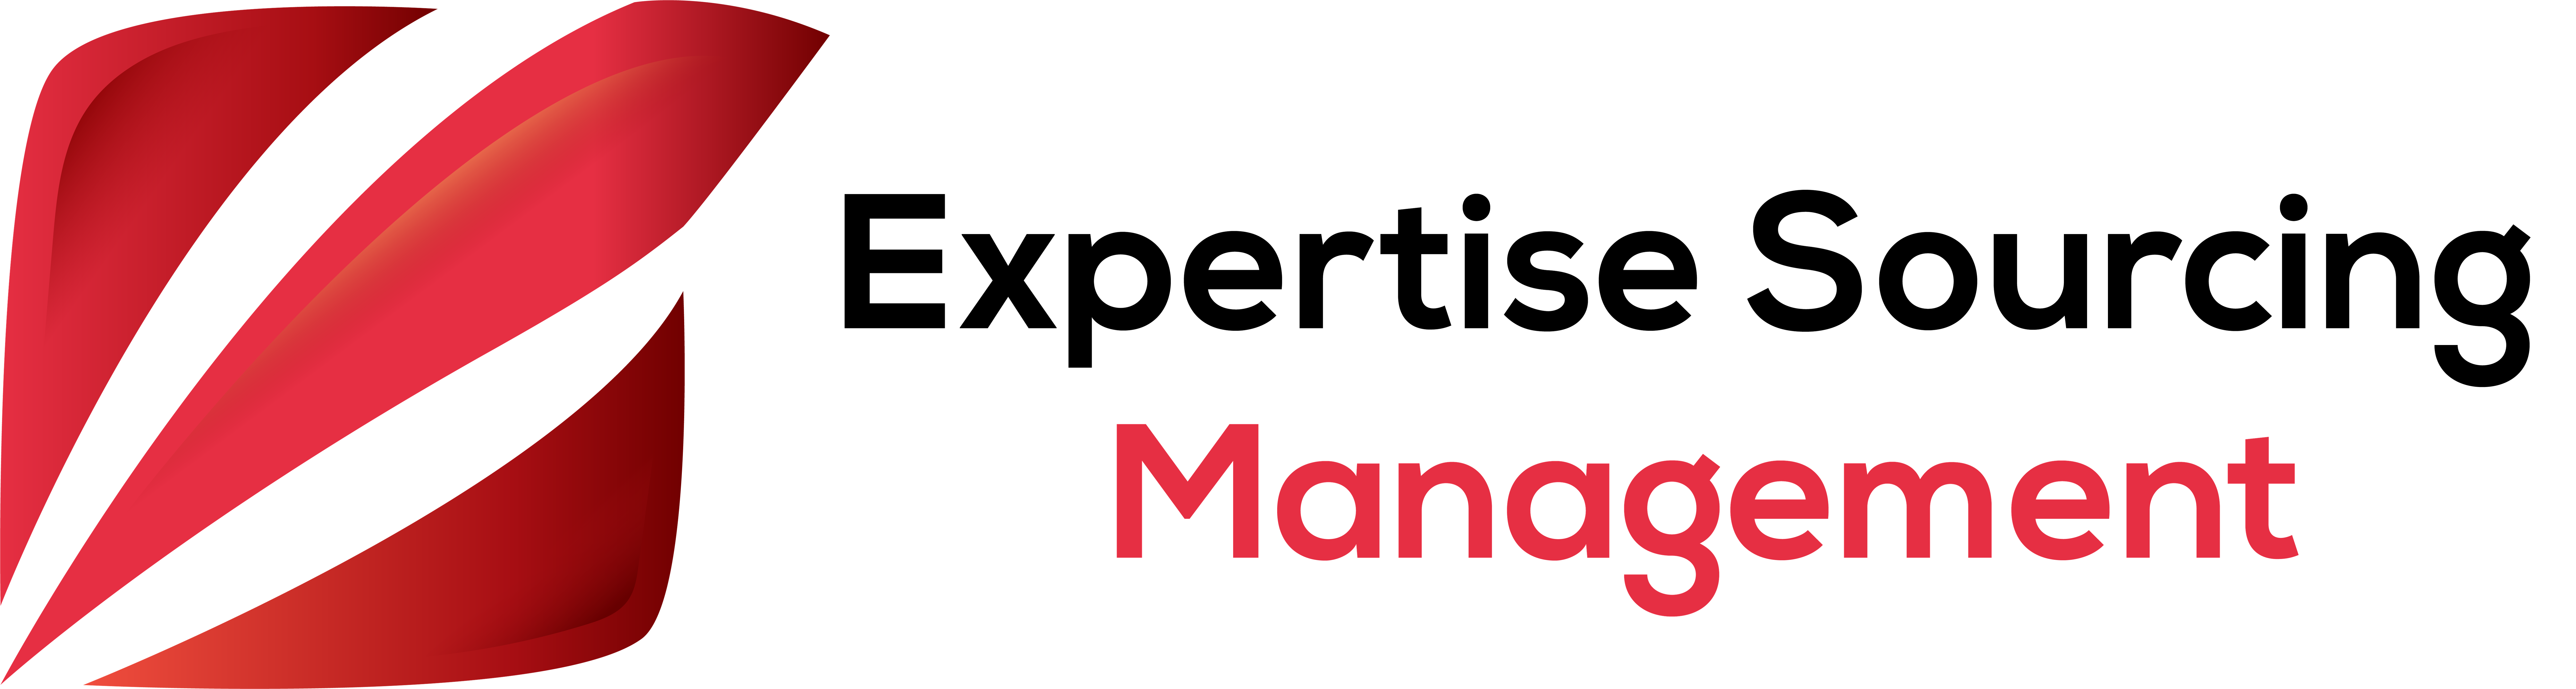 Expertise Sourcing Management Logo 3 Transparent